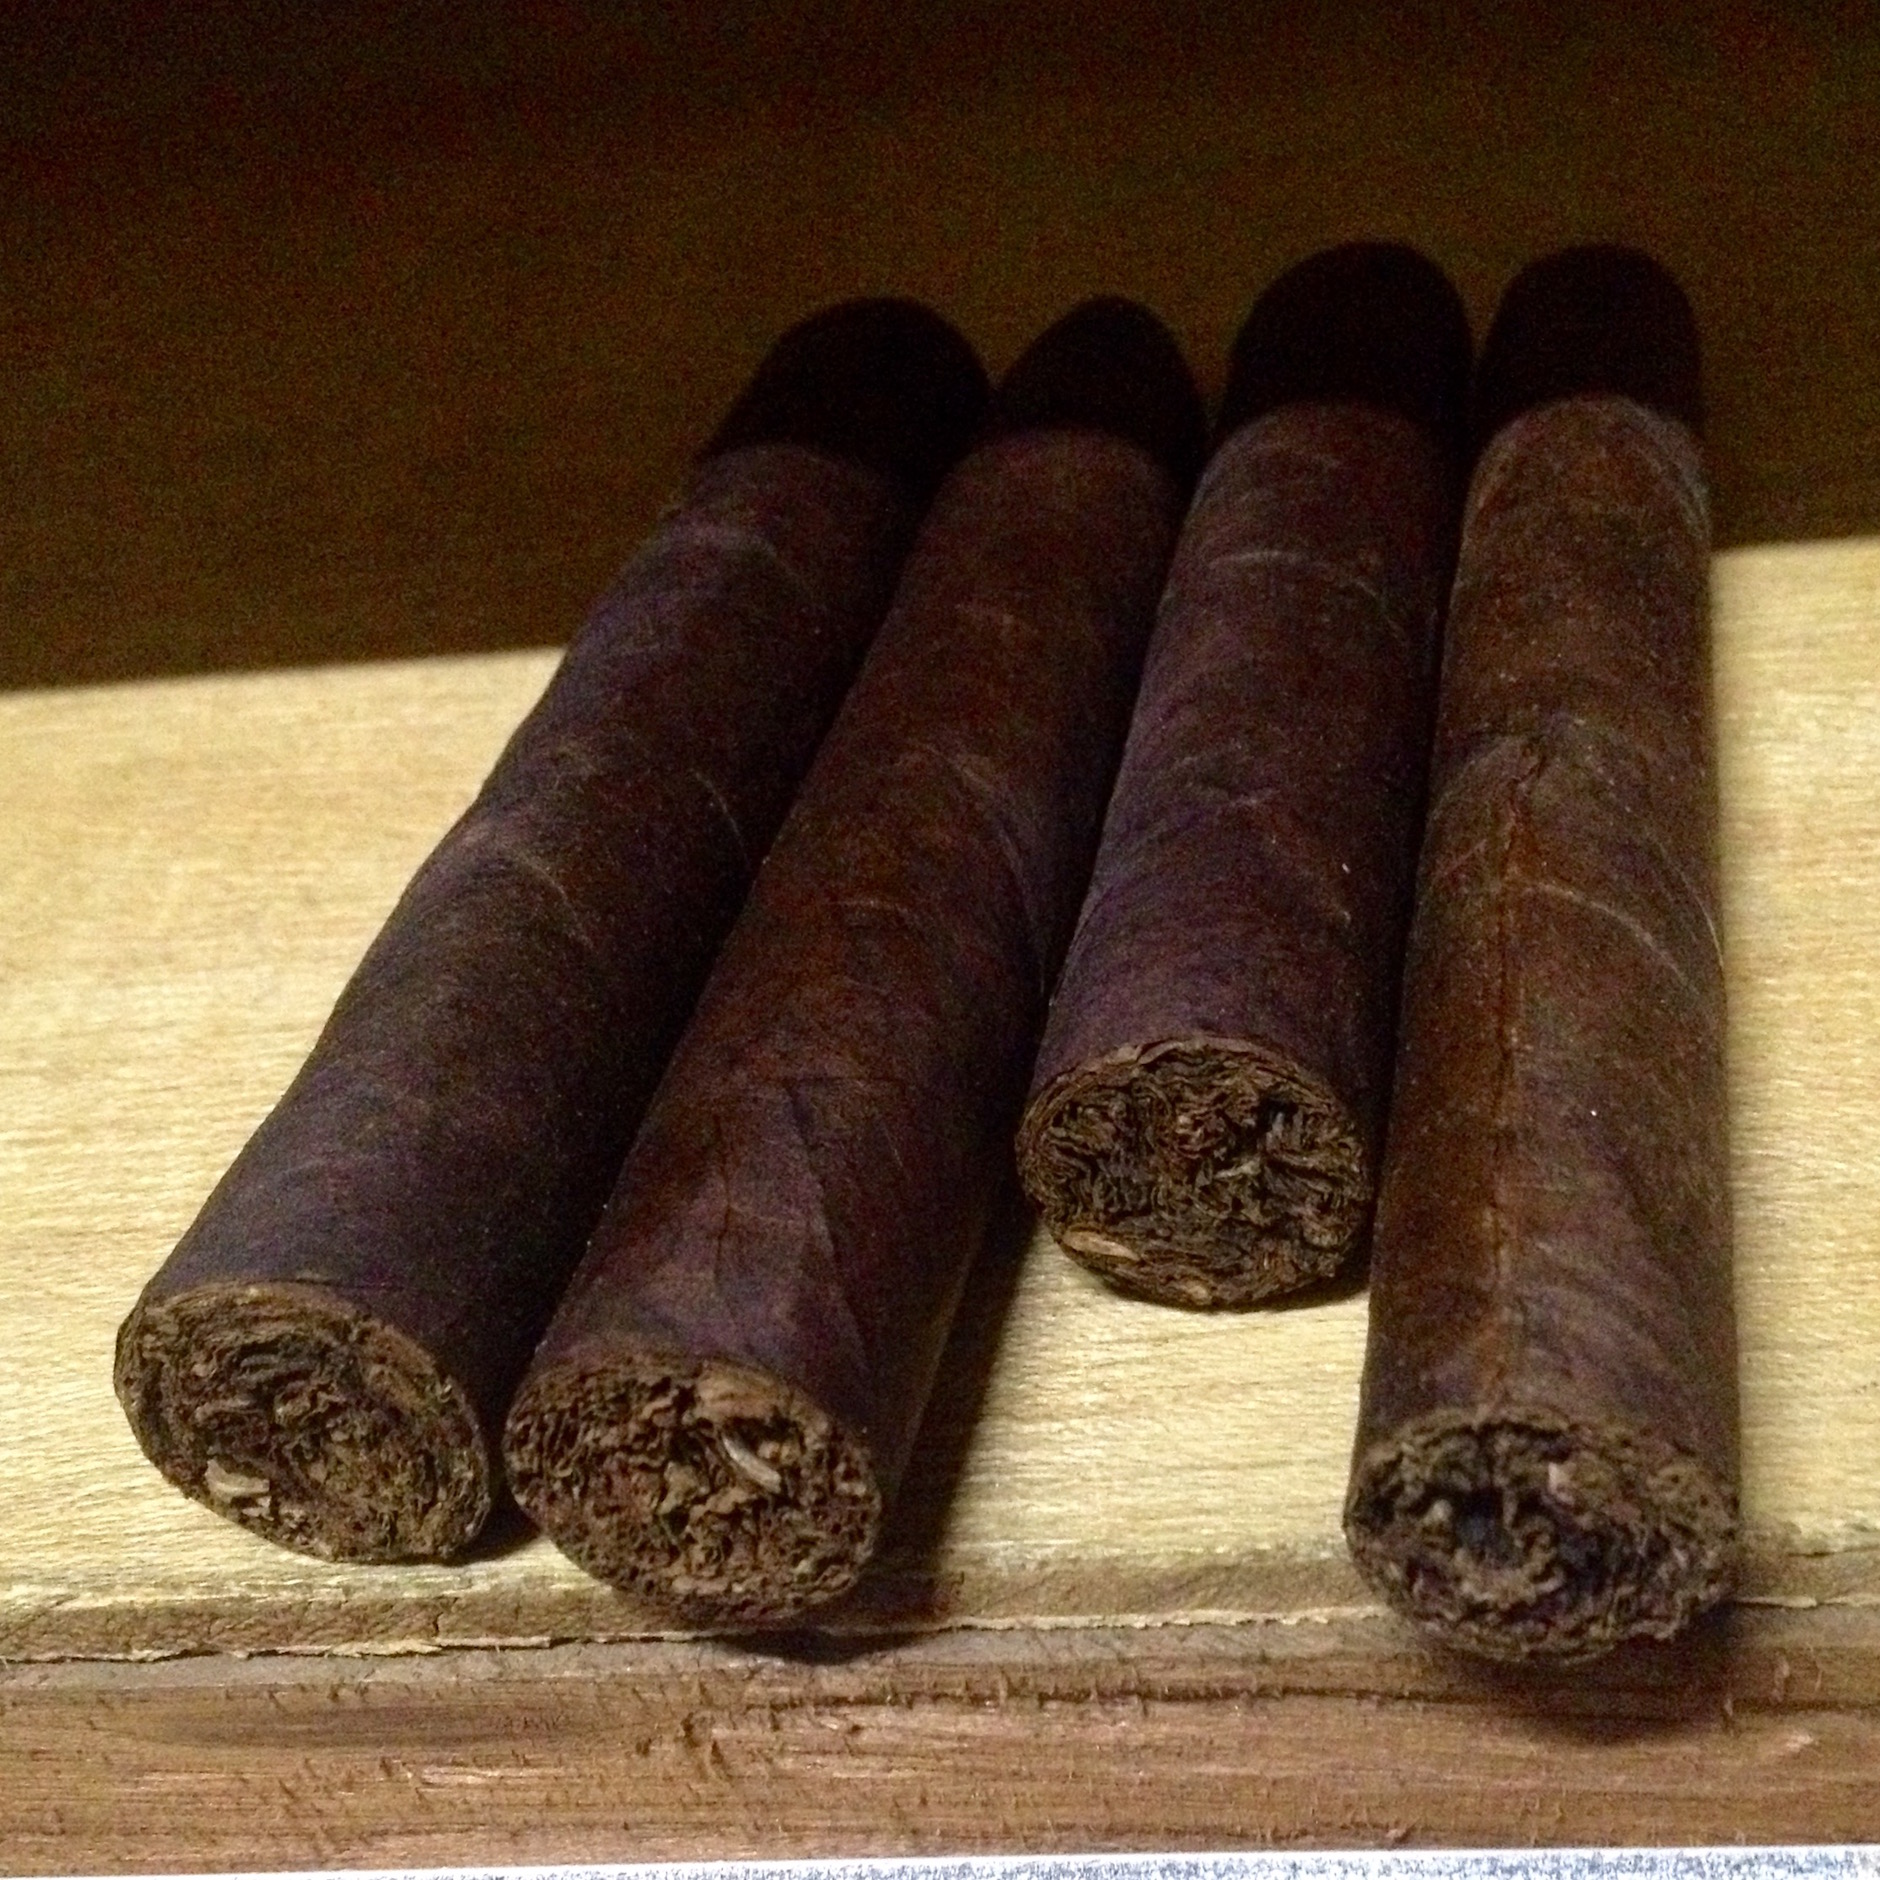 Las Calaveras 2016 Cigars